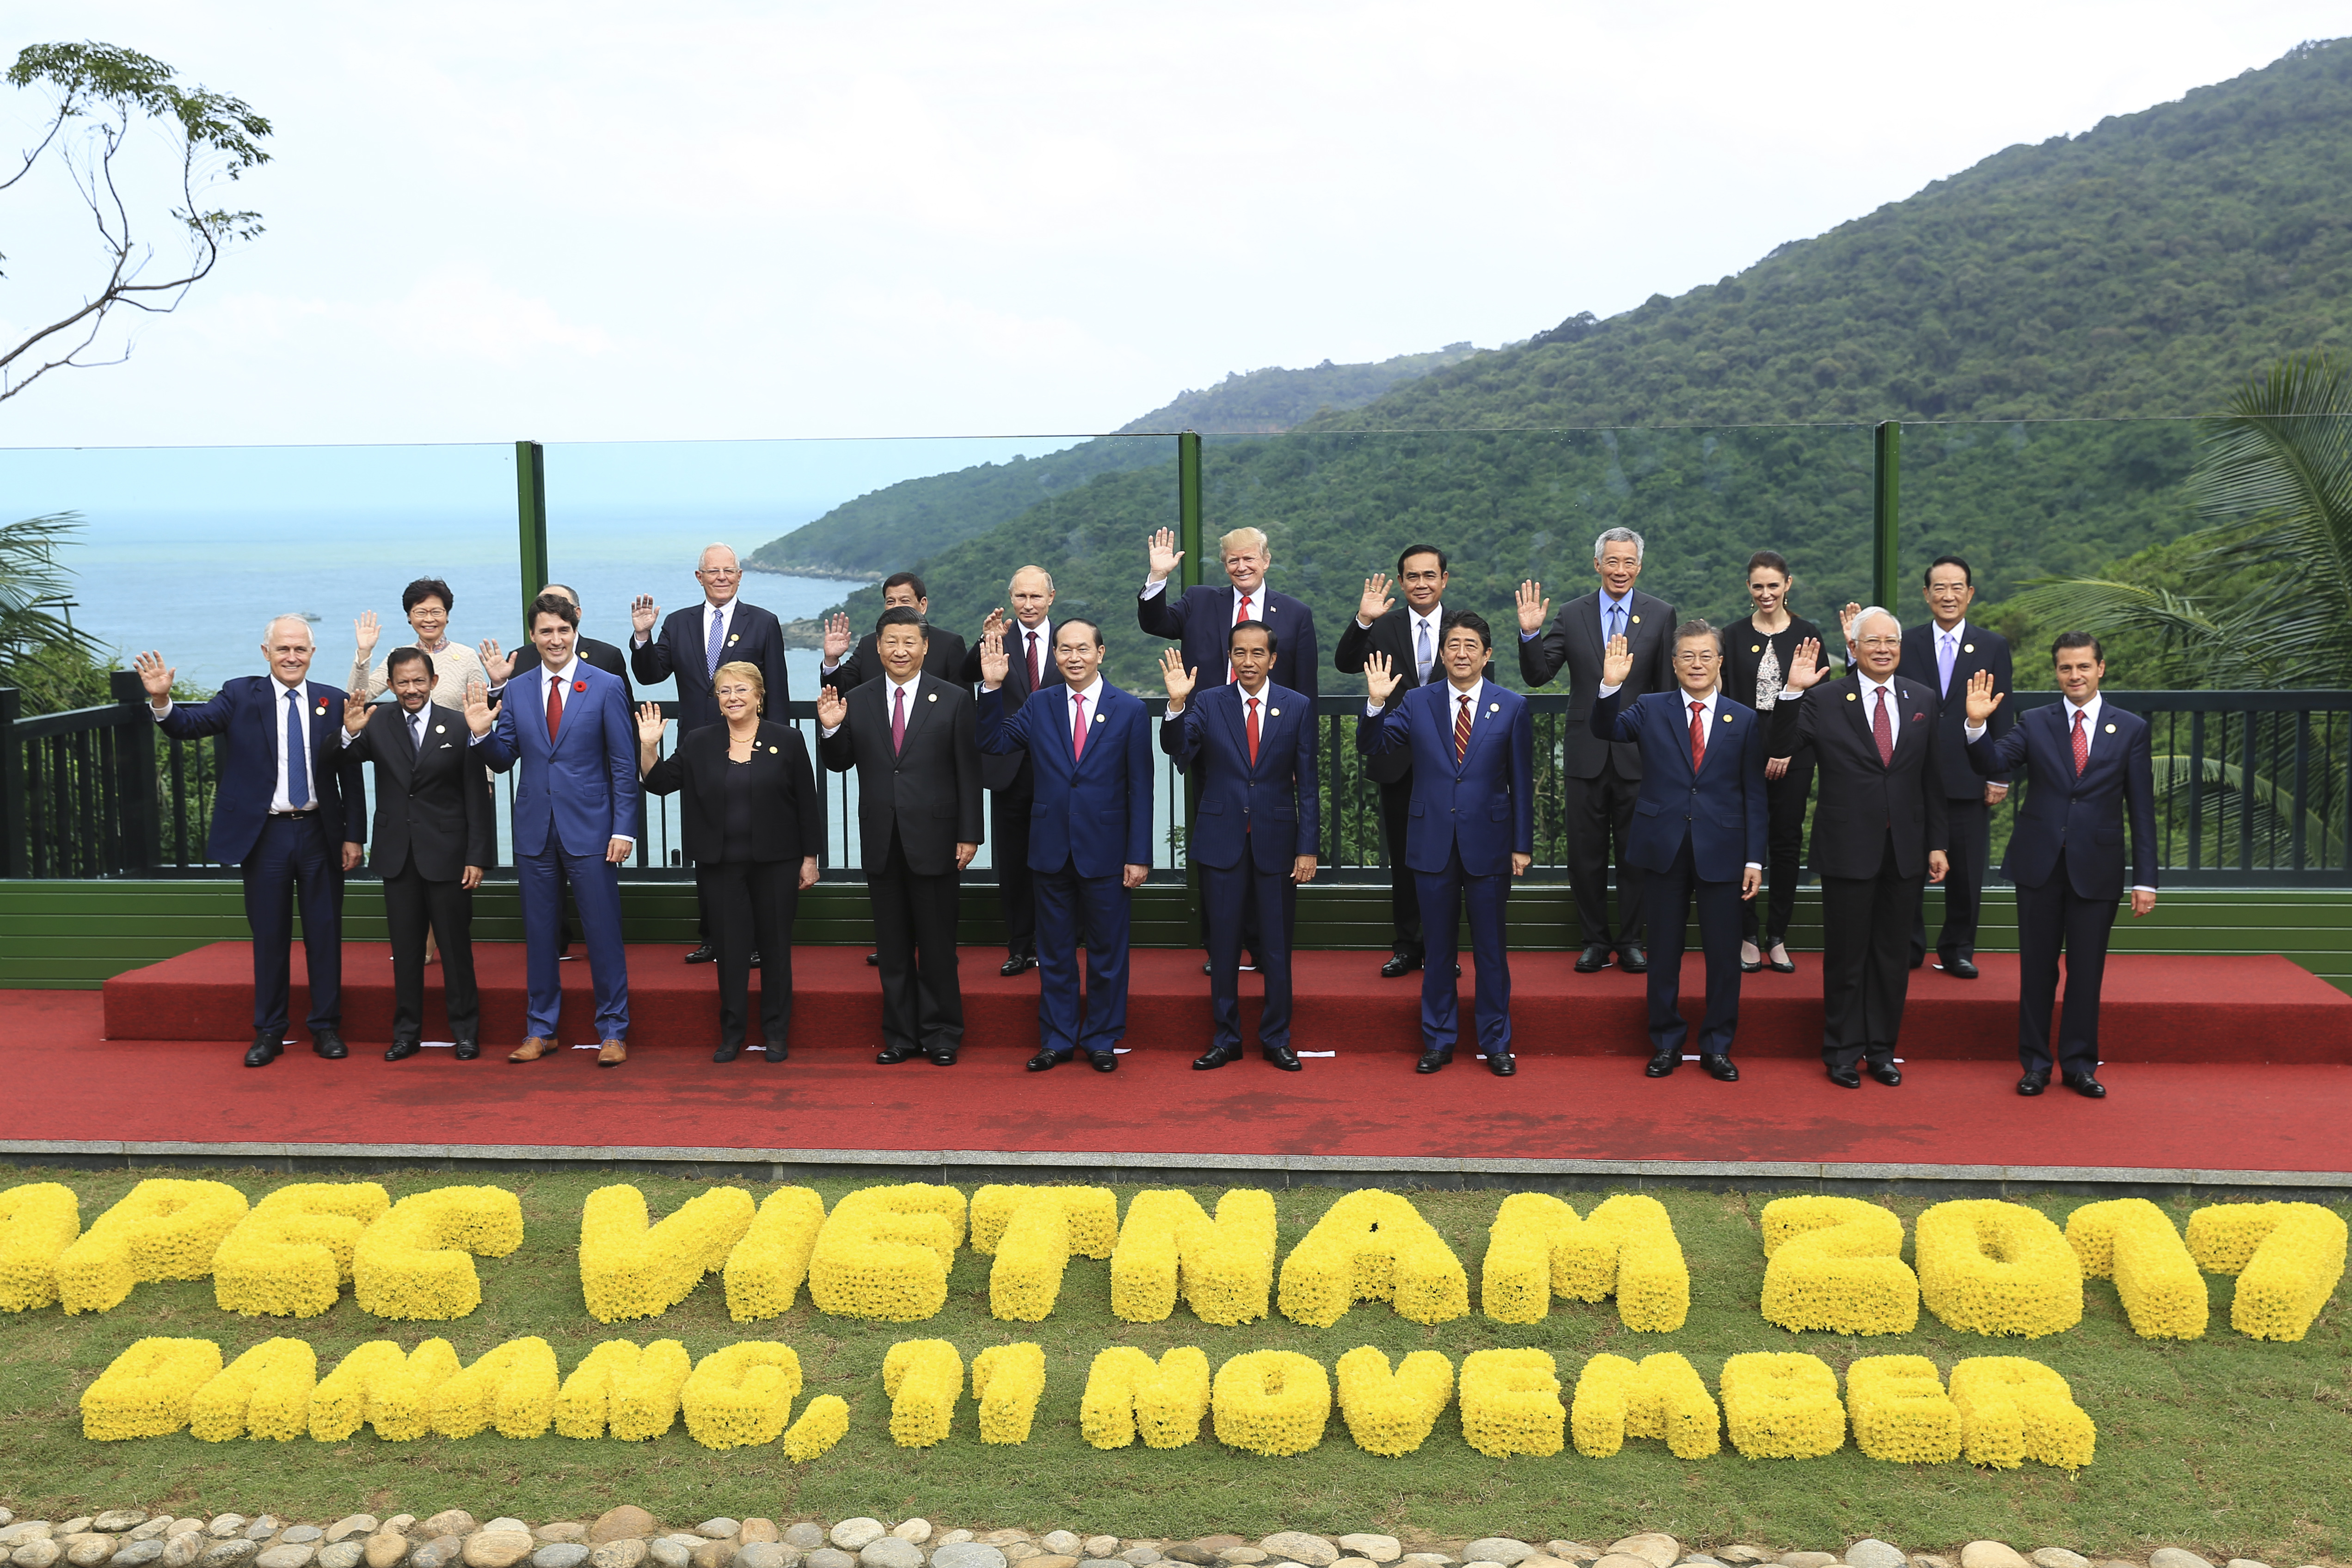 ”Фамилна” снимка на участниците в срещата във Виетнам